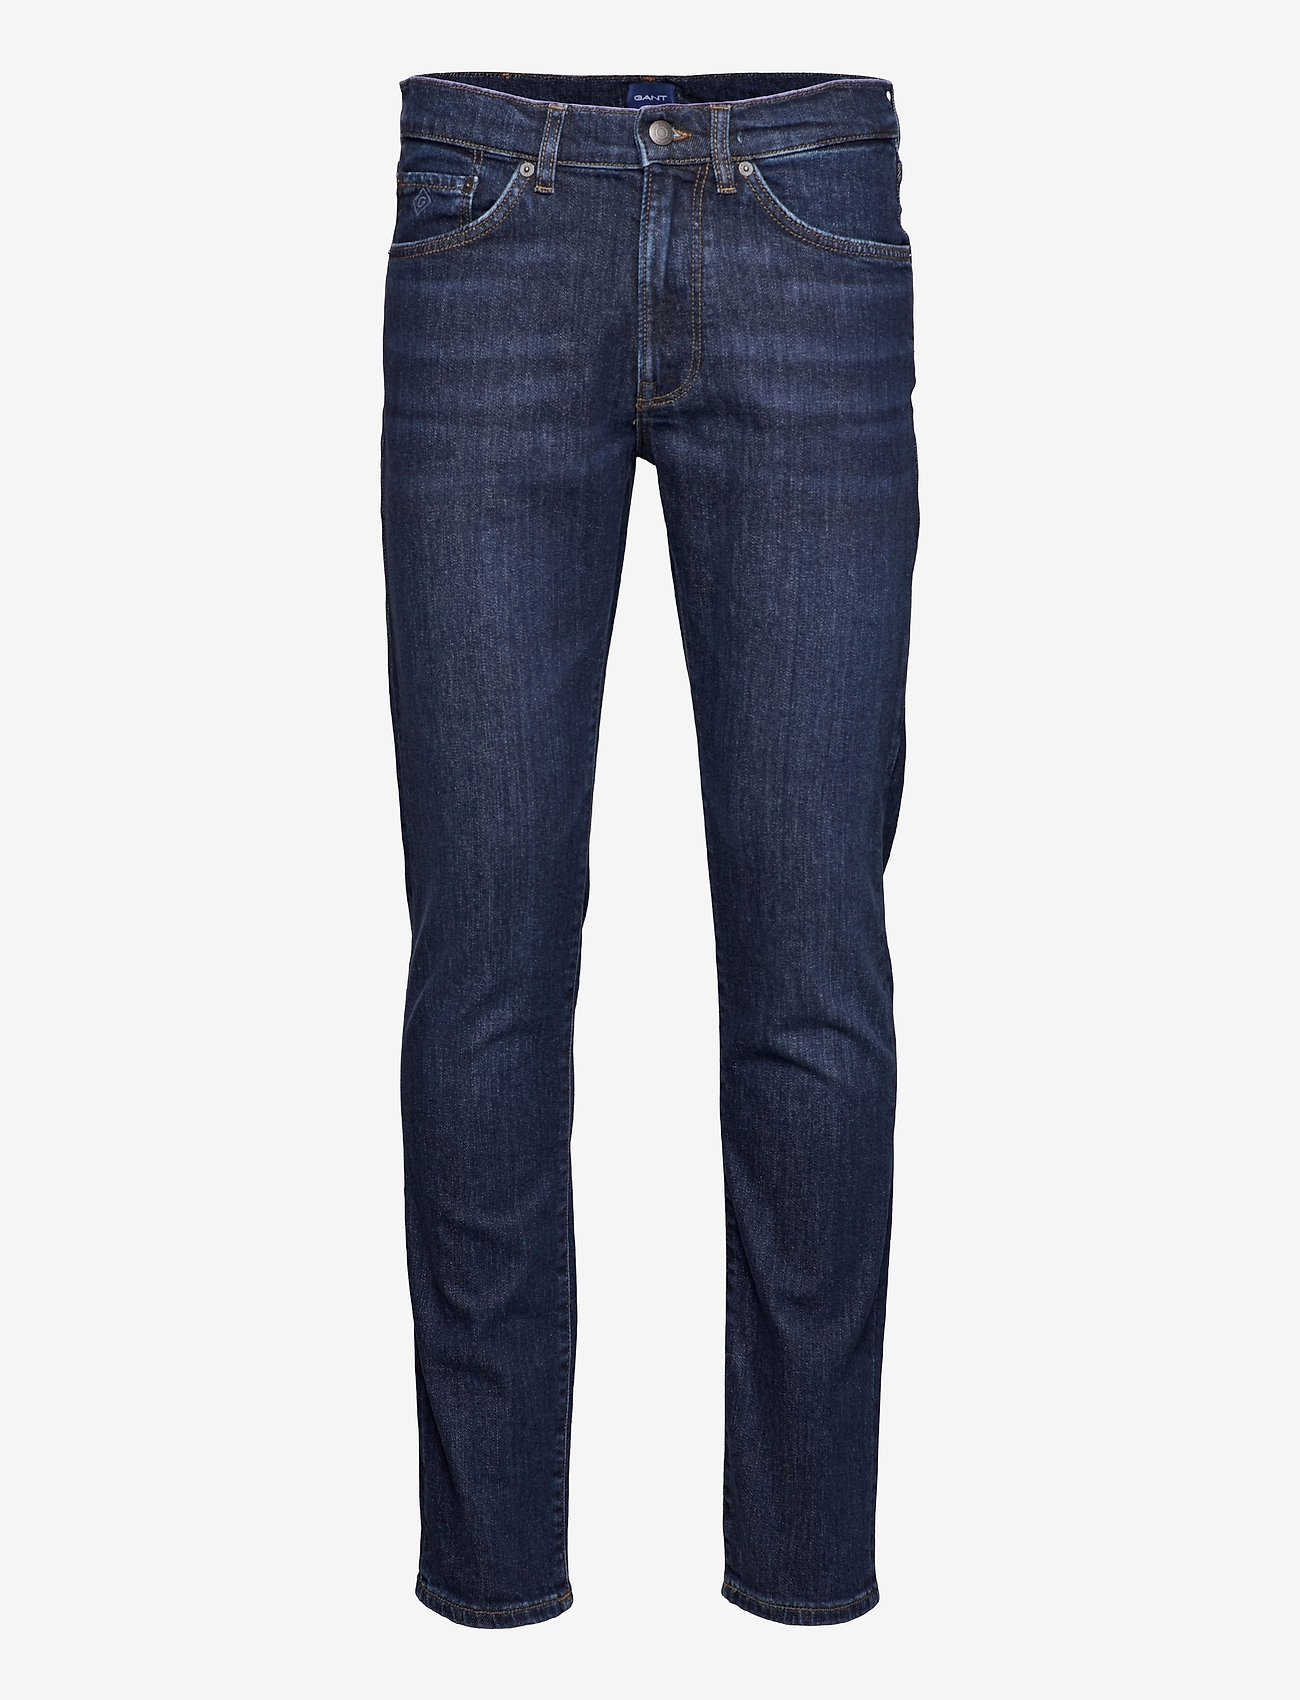 GANT - HAYES GANT JEANS - slim jeans - dark blue worn in - 0